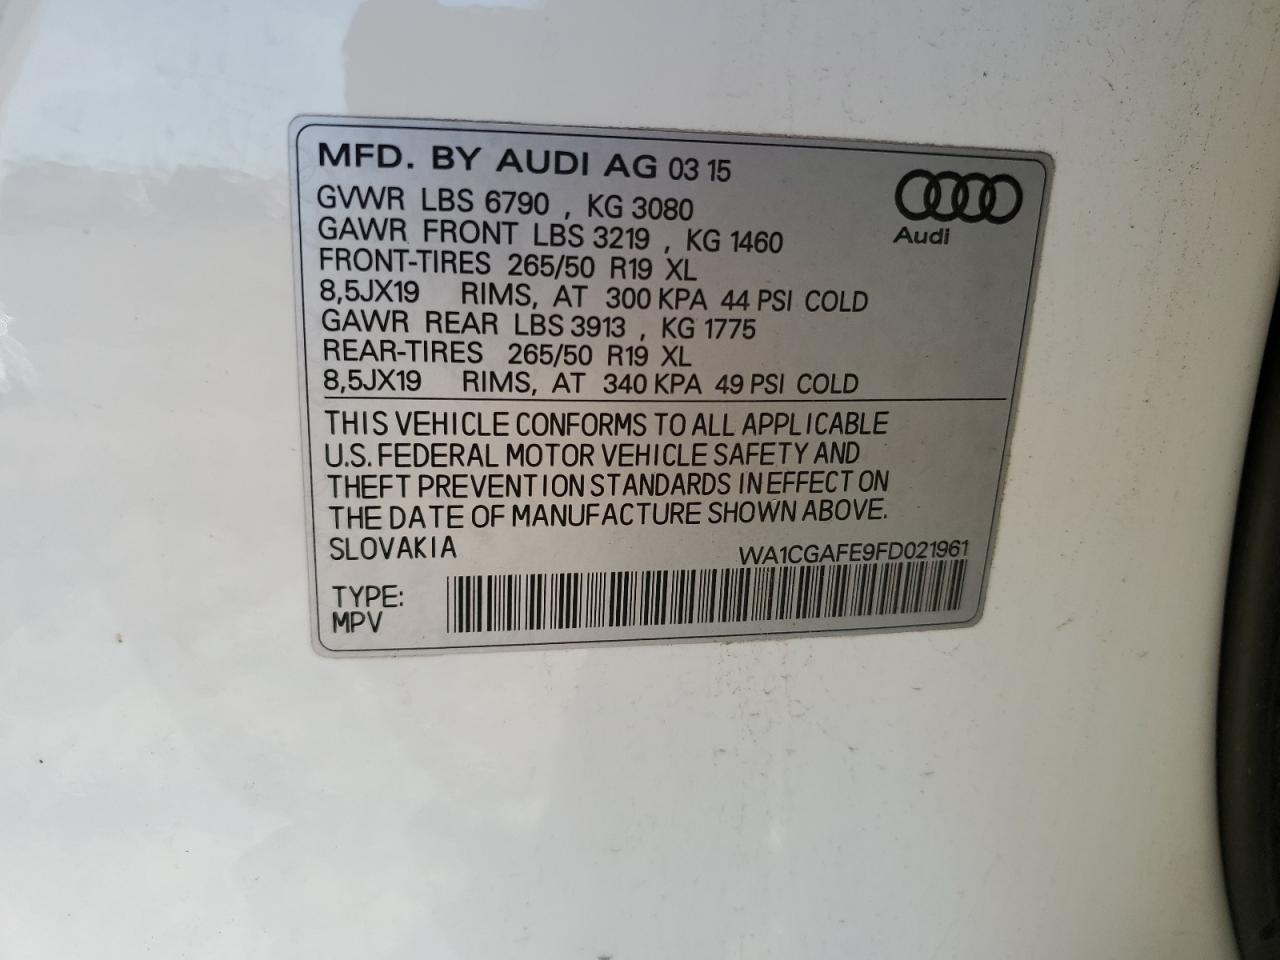 WA1CGAFE9FD****** Wrecked 2015 Audi Q7 in Alabama State